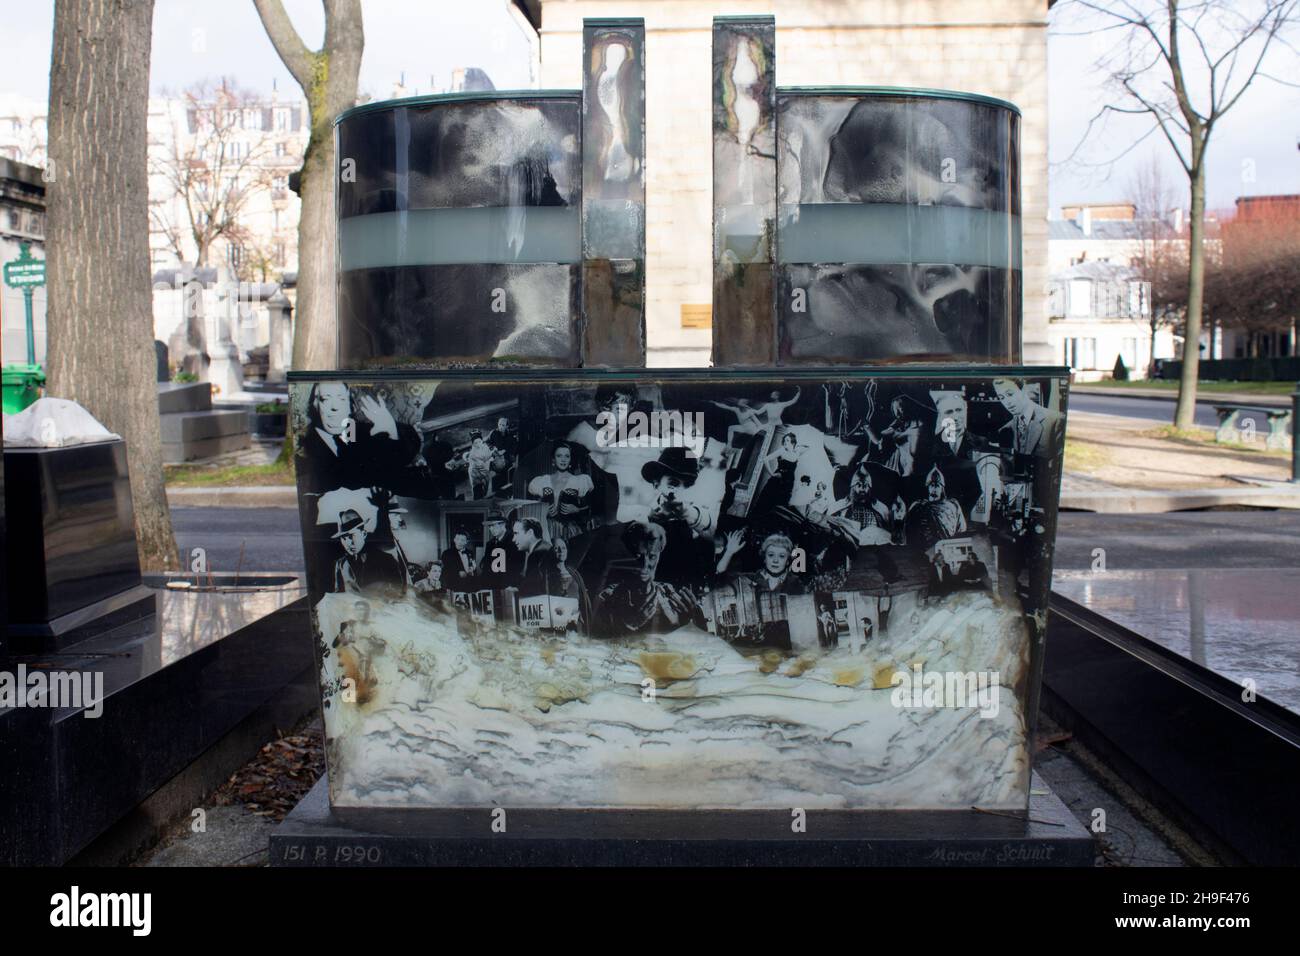 La tomba di Henri Langlois - archivista e cinefilo francese, e fondatore della Cinemateque Francaise - decorato con immagini di Montparnasse Foto Stock